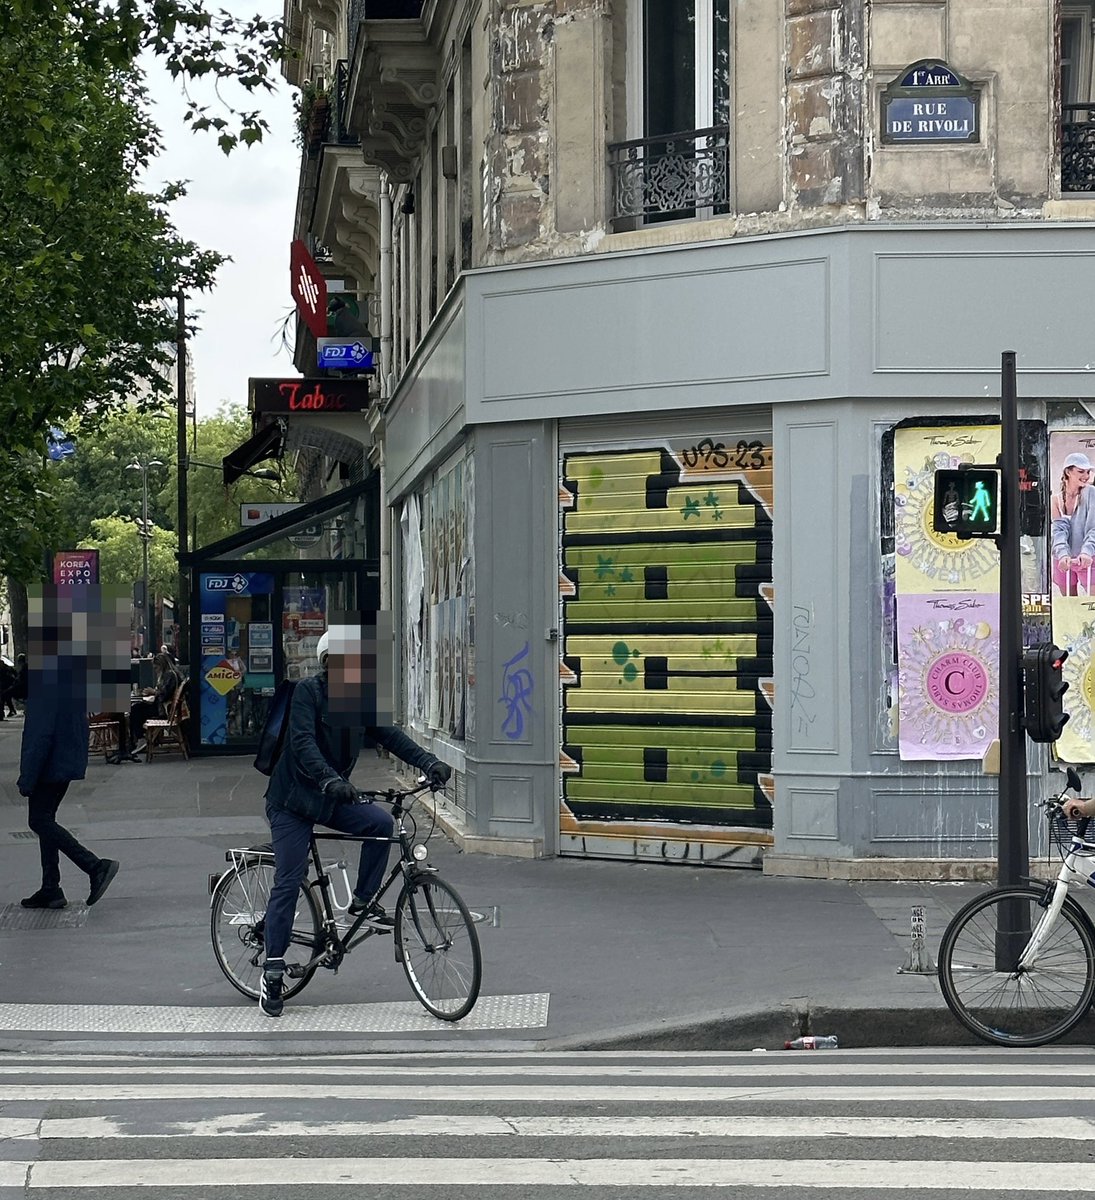 Piste cyclable de la Rue de Rivoli is good but rouler sur le trottoir pour éviter le feu est even better 
#pariscentre